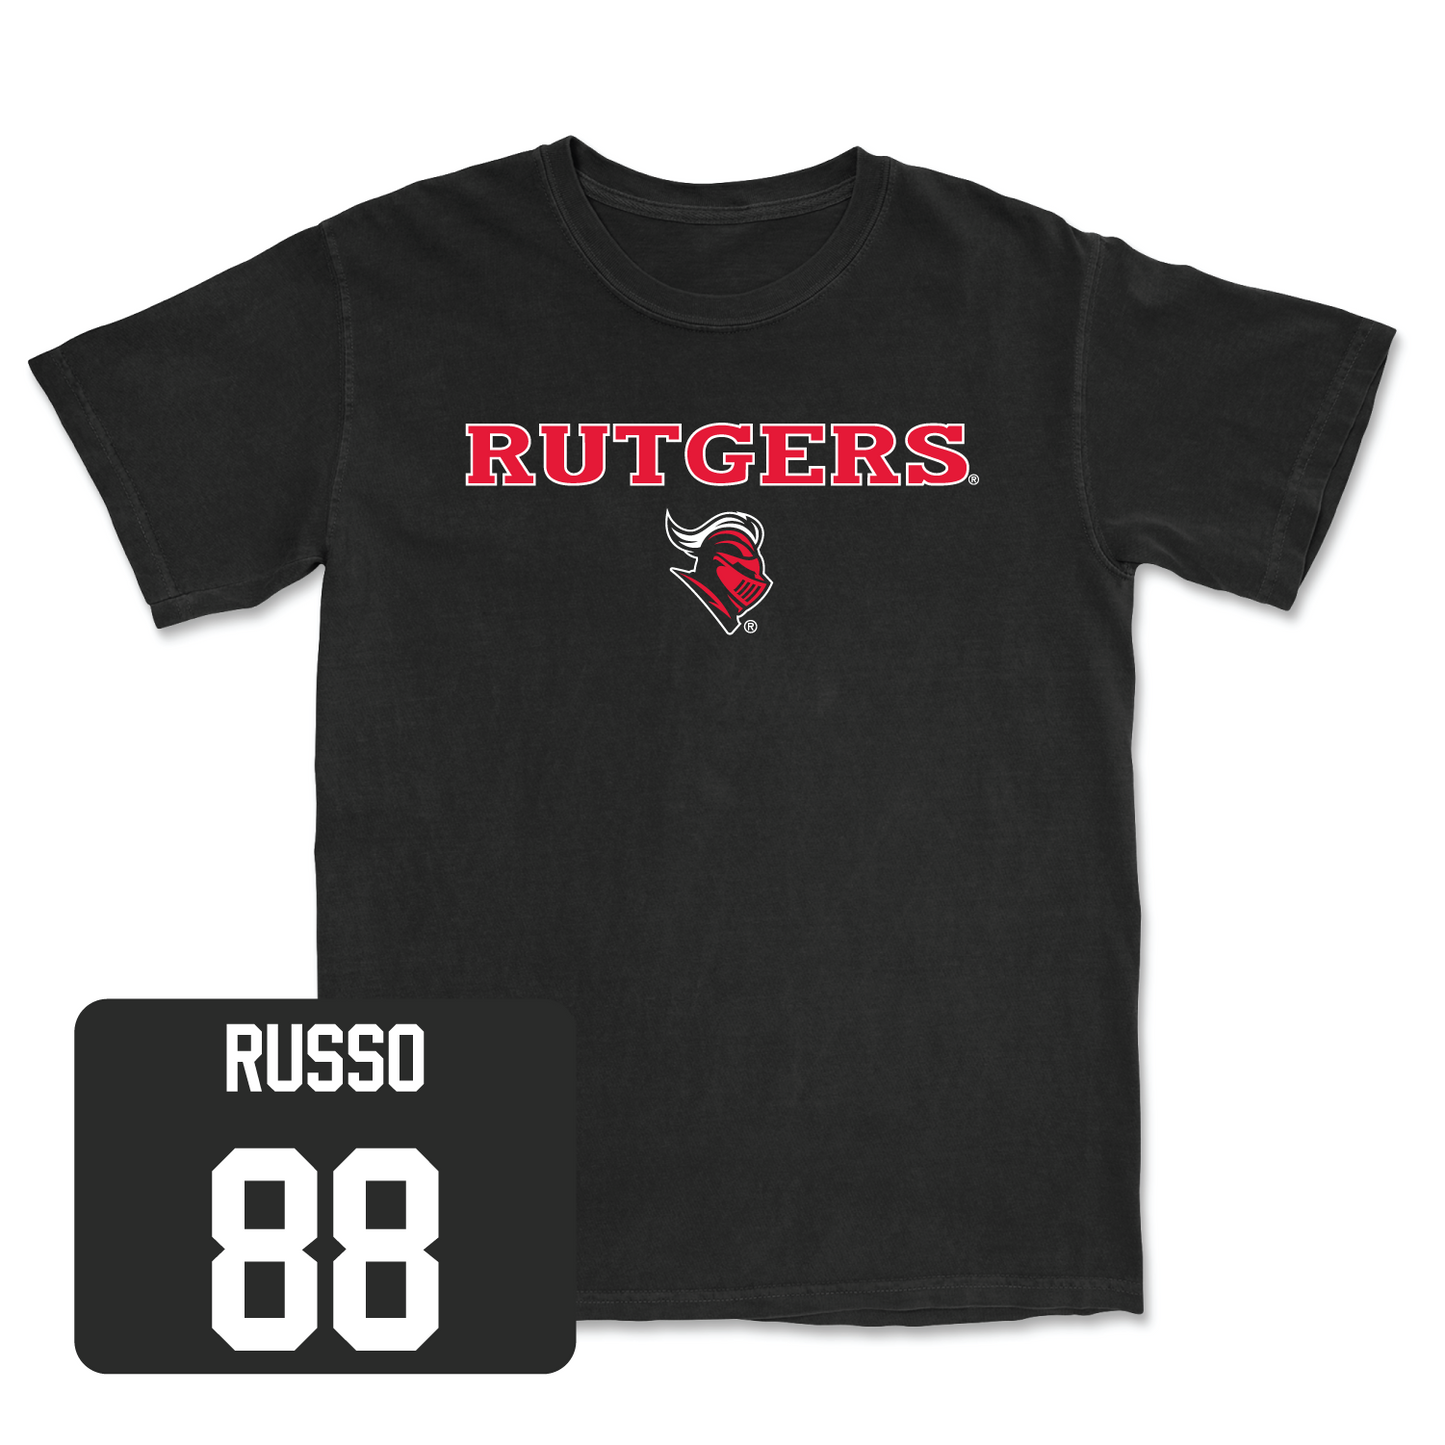 Men's Lacrosse Black Rutgers Tee